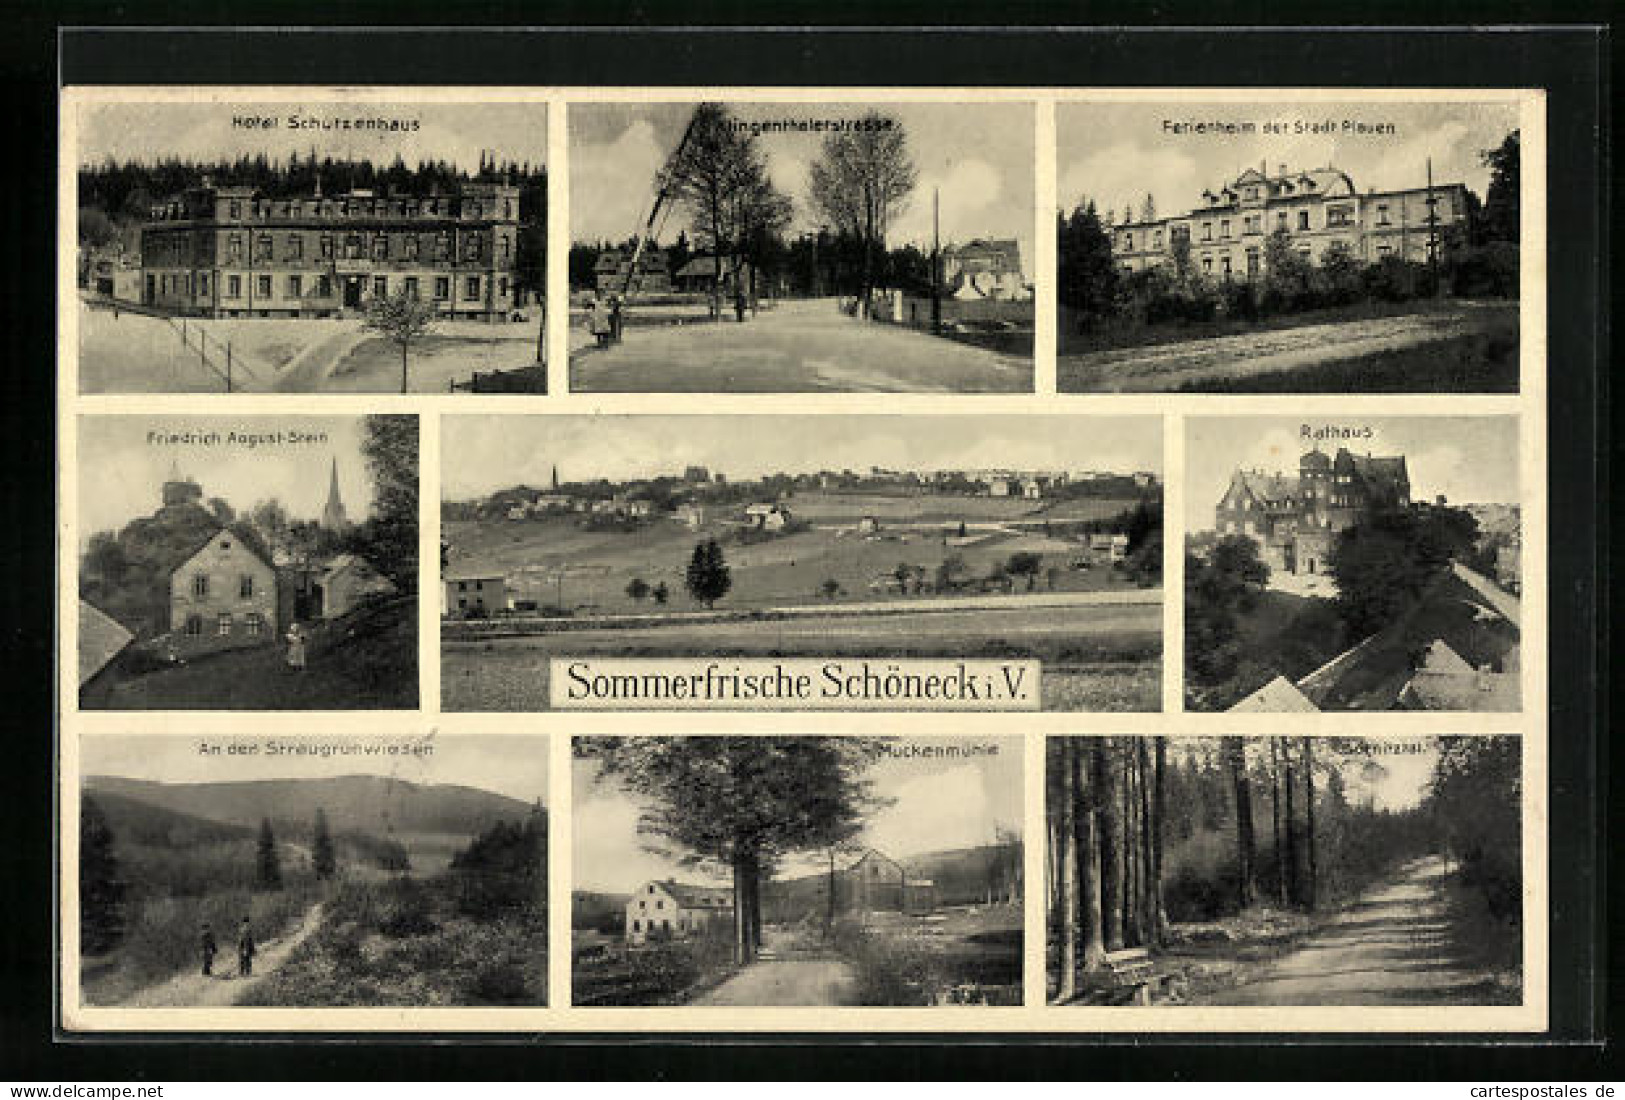 AK Schöneck I. V., Hotel Schützenhaus, Klingenthalerstrasse, Ferienheim Der Stadt Plauen  - Plauen